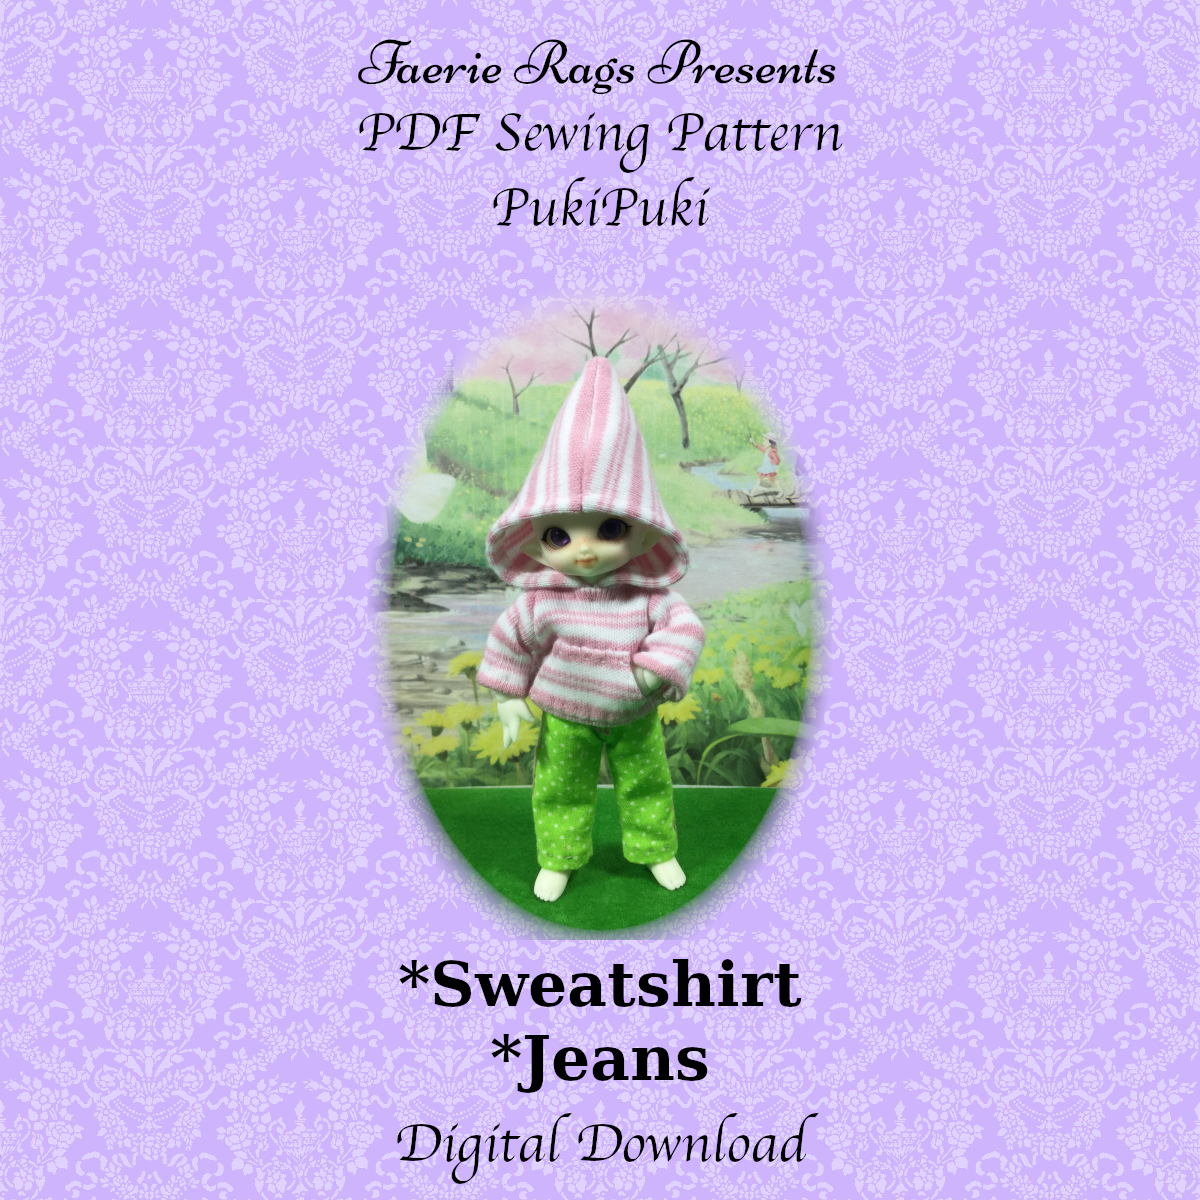 PukiPuki Sweatshirt and Jeans